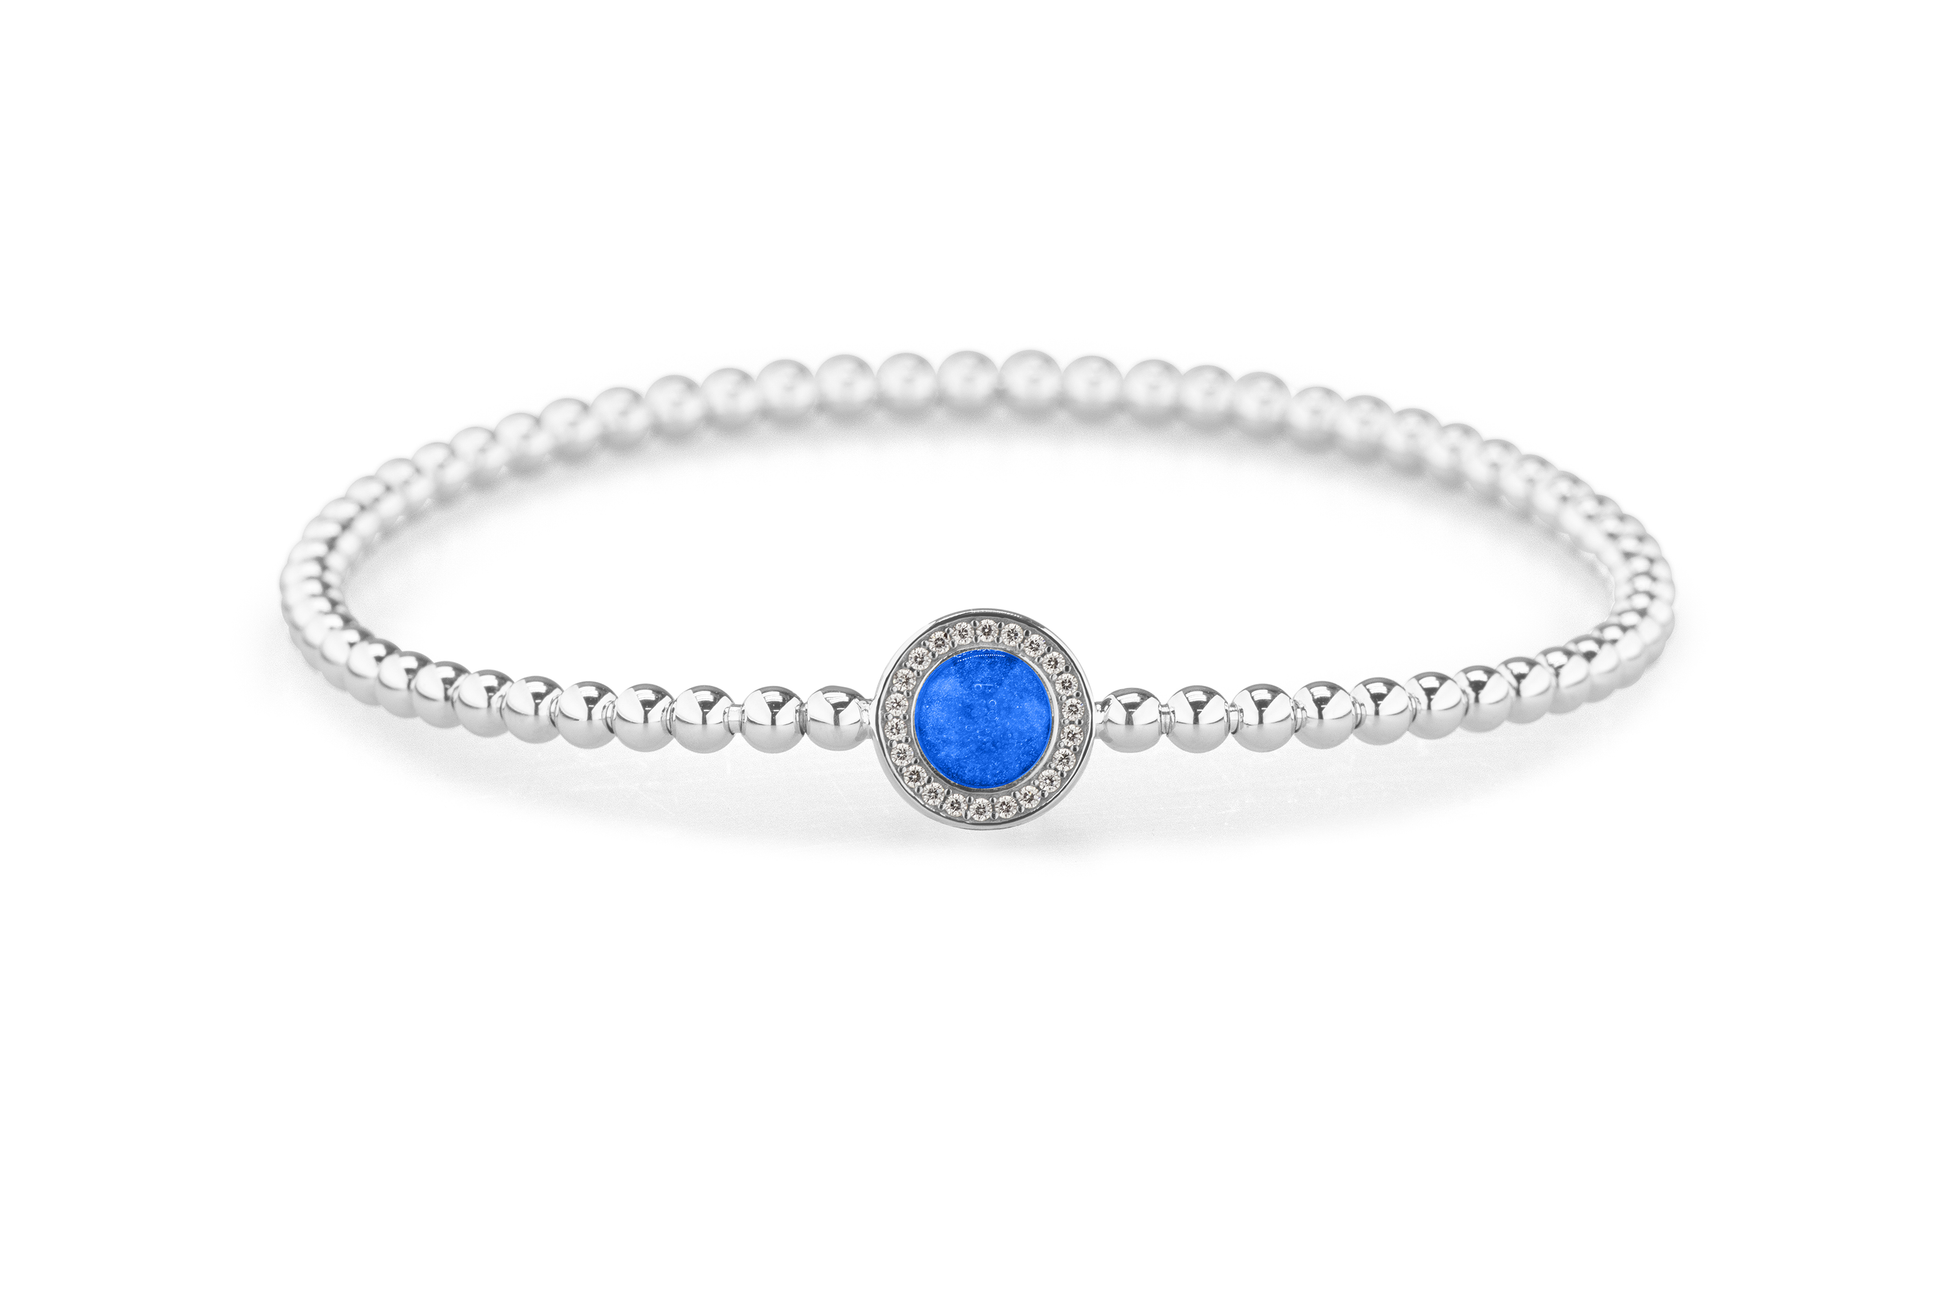 Flexibele as armband met rondje als compartiment gezet rondom met zirconia's voor as of haar. Blue